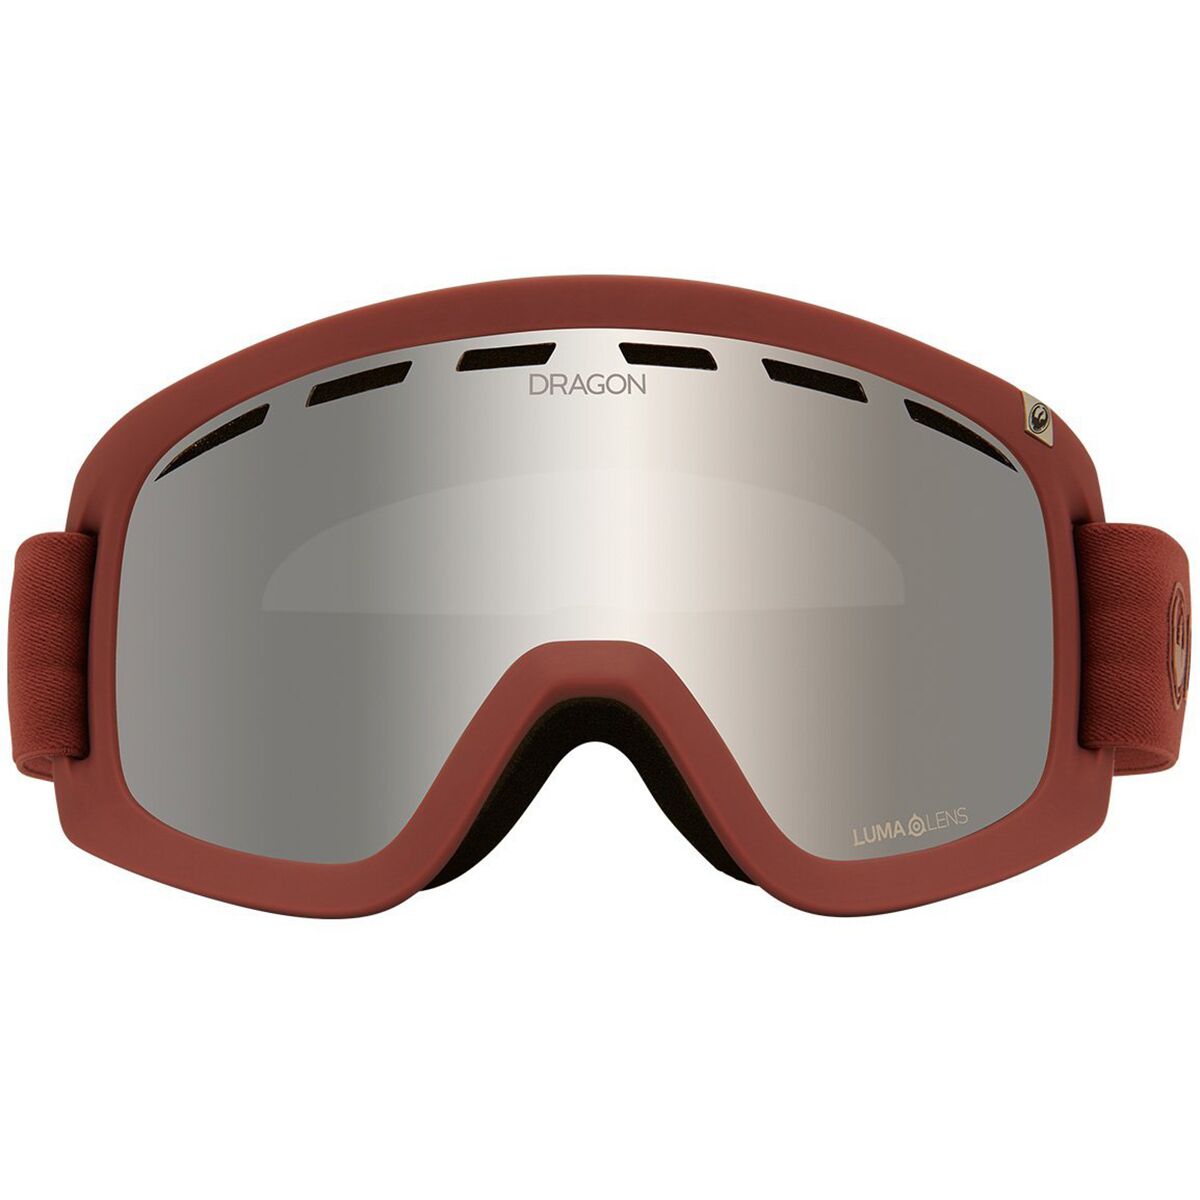 Dragon D1 OTG Goggles - Ski